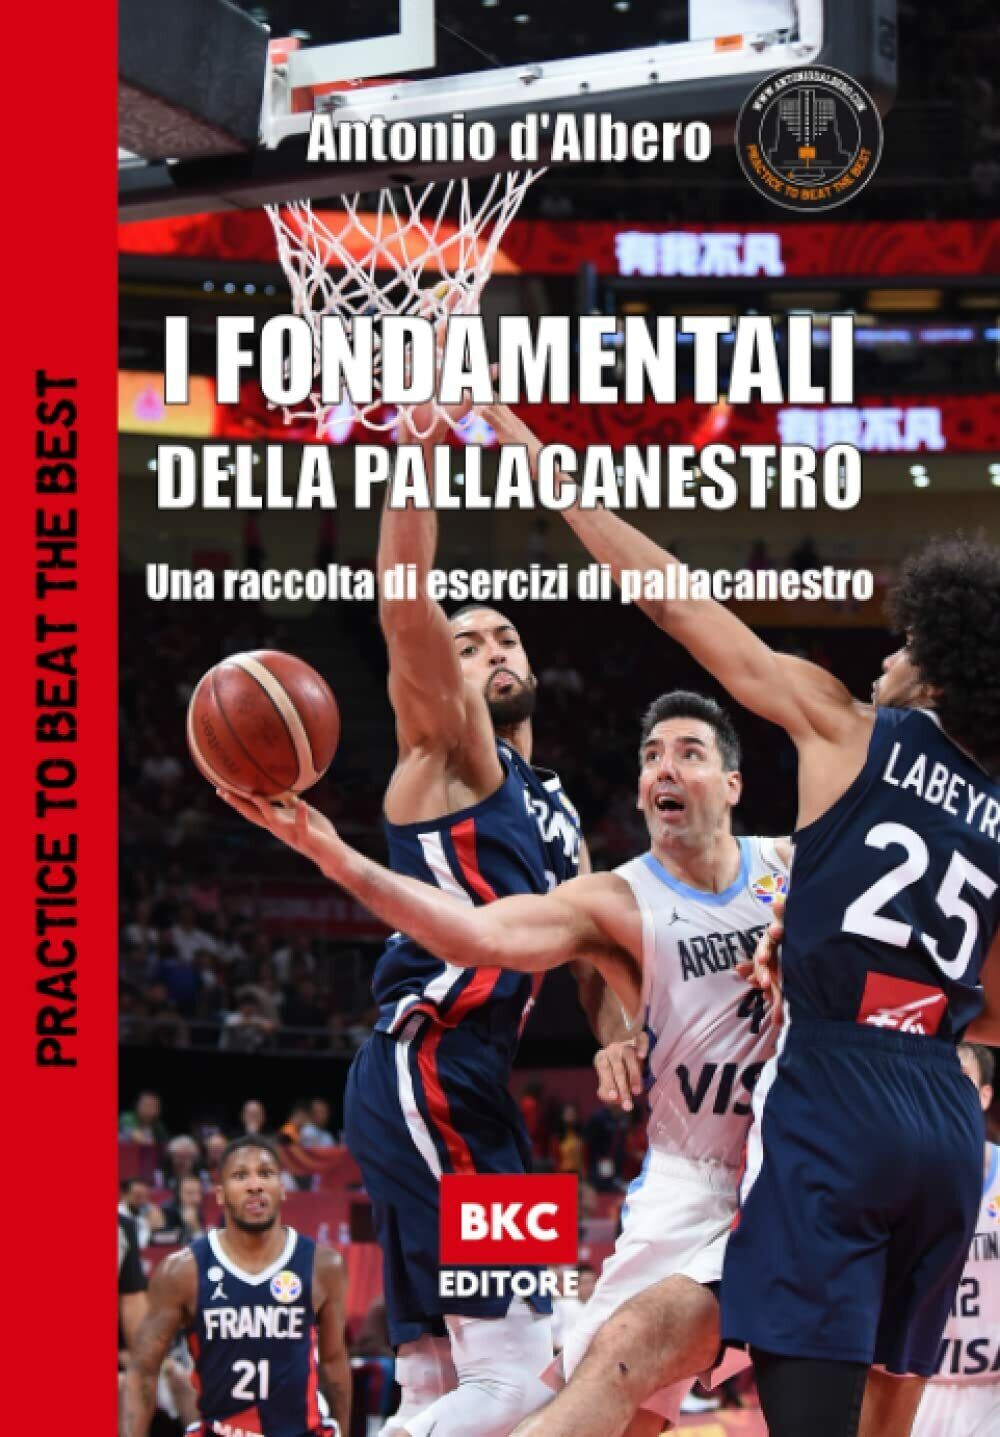 I fondamentali della pallacanestro - Antonio D'Albero - BasketCoach.Net, 2022 libro usato